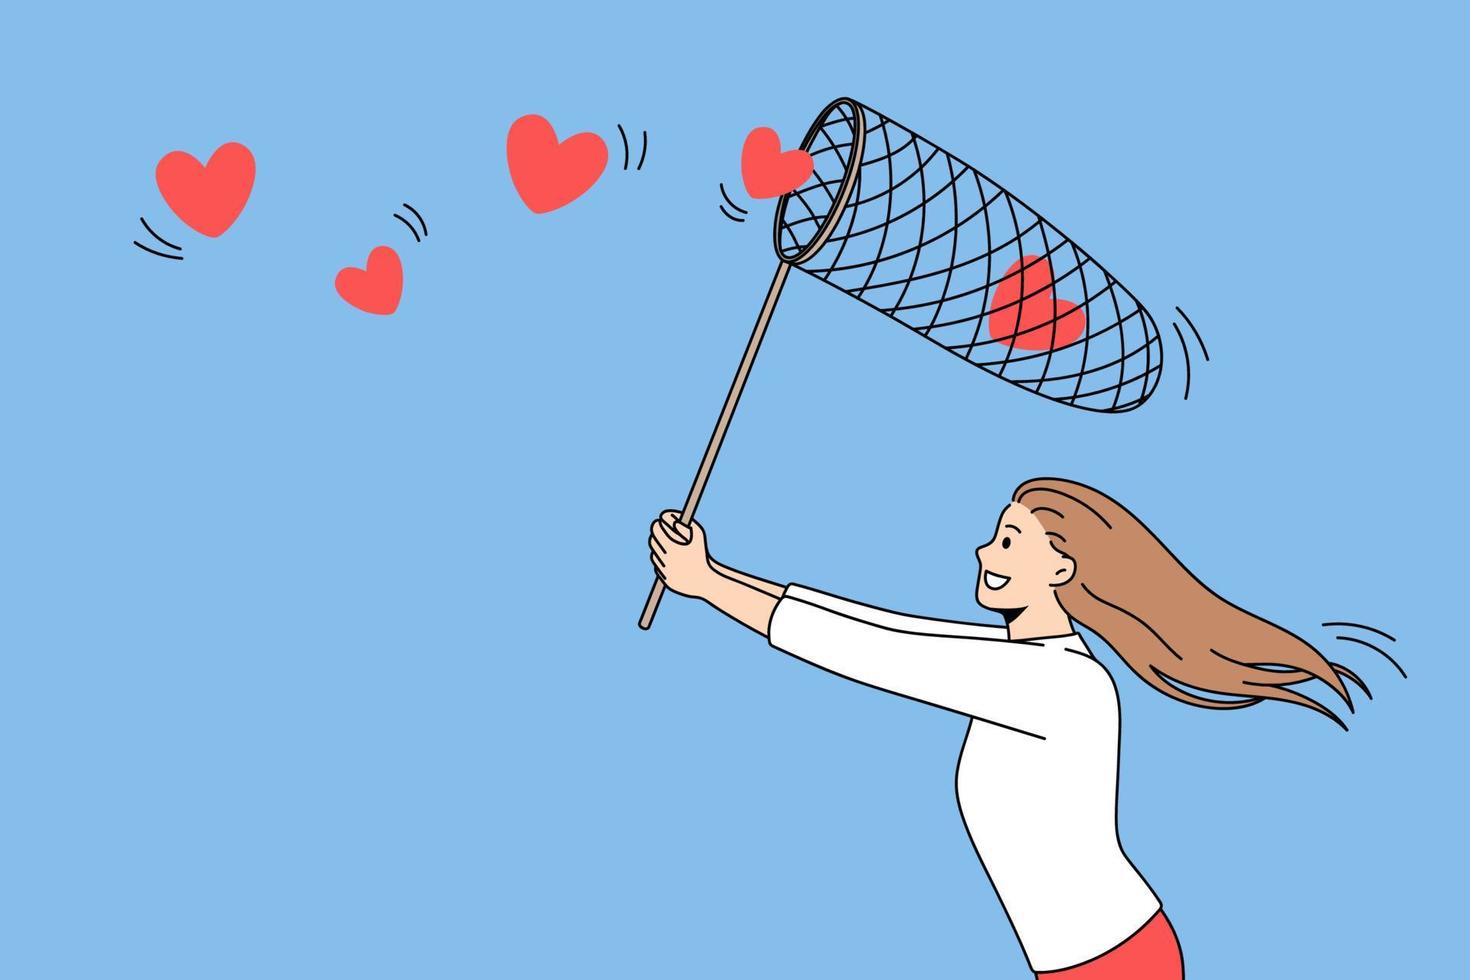 zoeken voor liefde en romance concept. jong positief meisje rennen proberen naar verzamelen vliegend rood harten in netto over- blauw lucht achtergrond vector illustratie